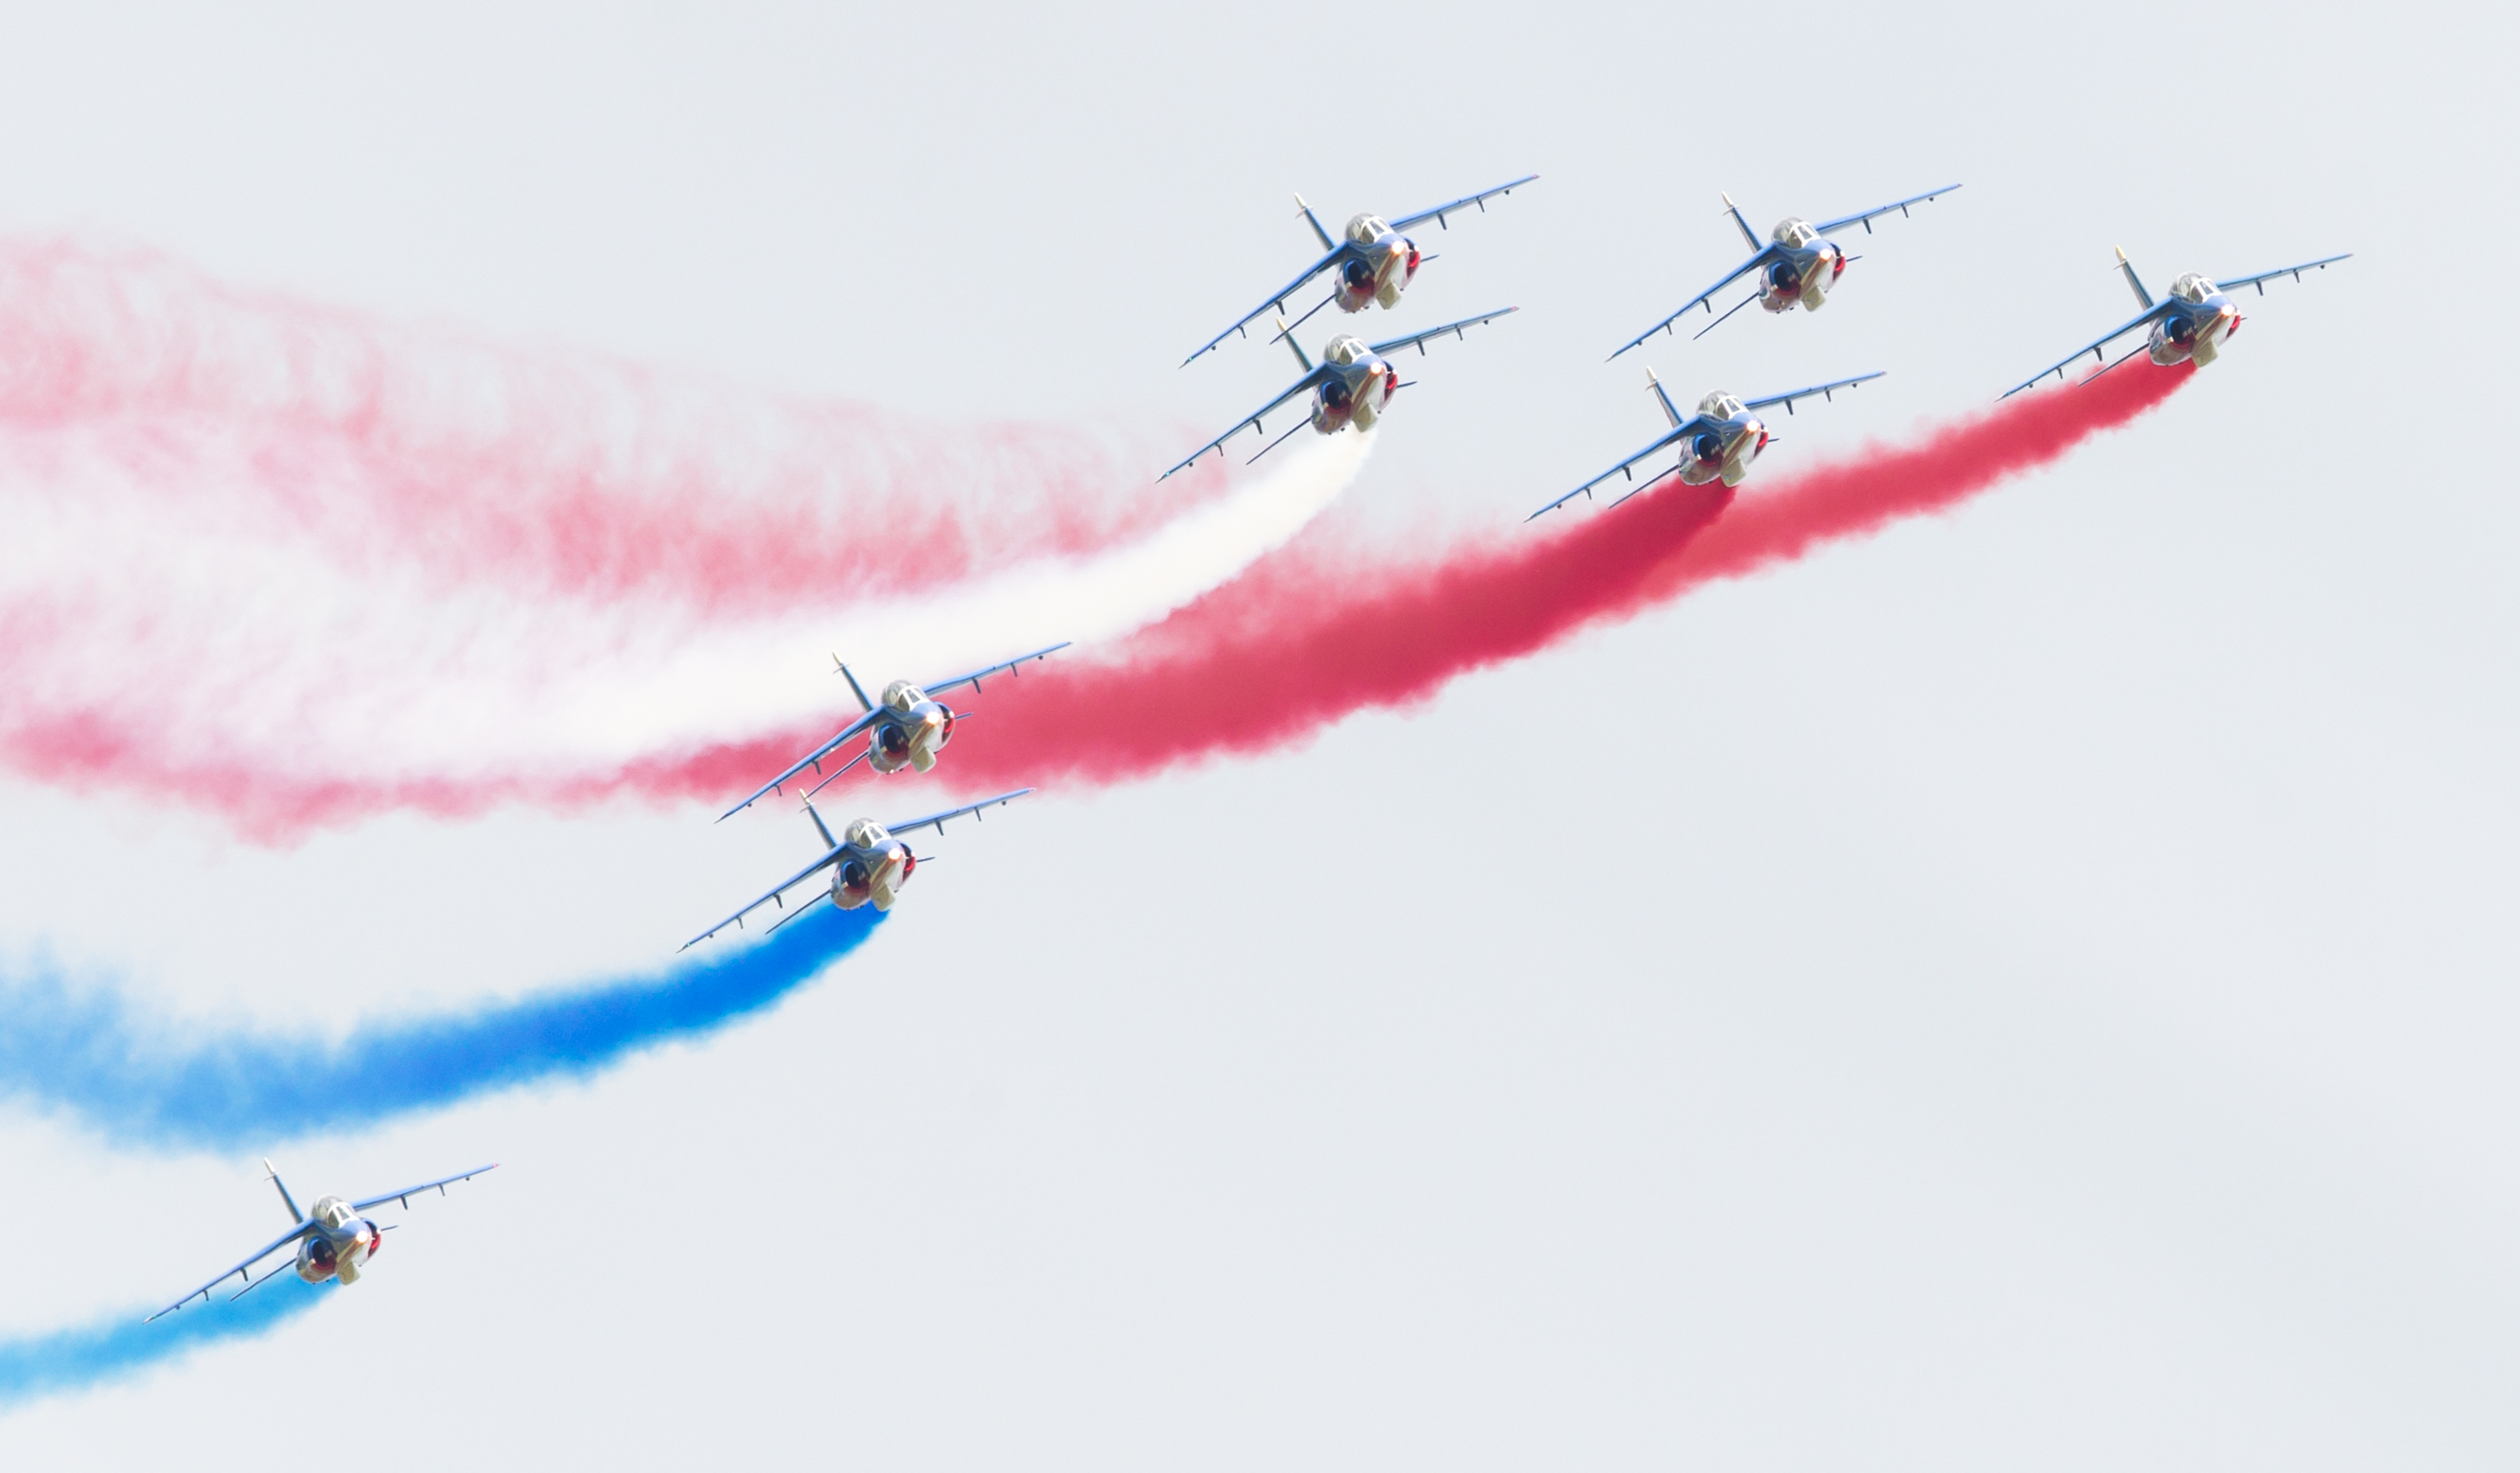 LEEUWARDEN THE NETHERLANDS-JUNE 11 2016: Pilots of Patrouille de France perform acrobatics at the Dutch Airshow on June 11 2016 at Leeuwarden Airfield The Netherlands.